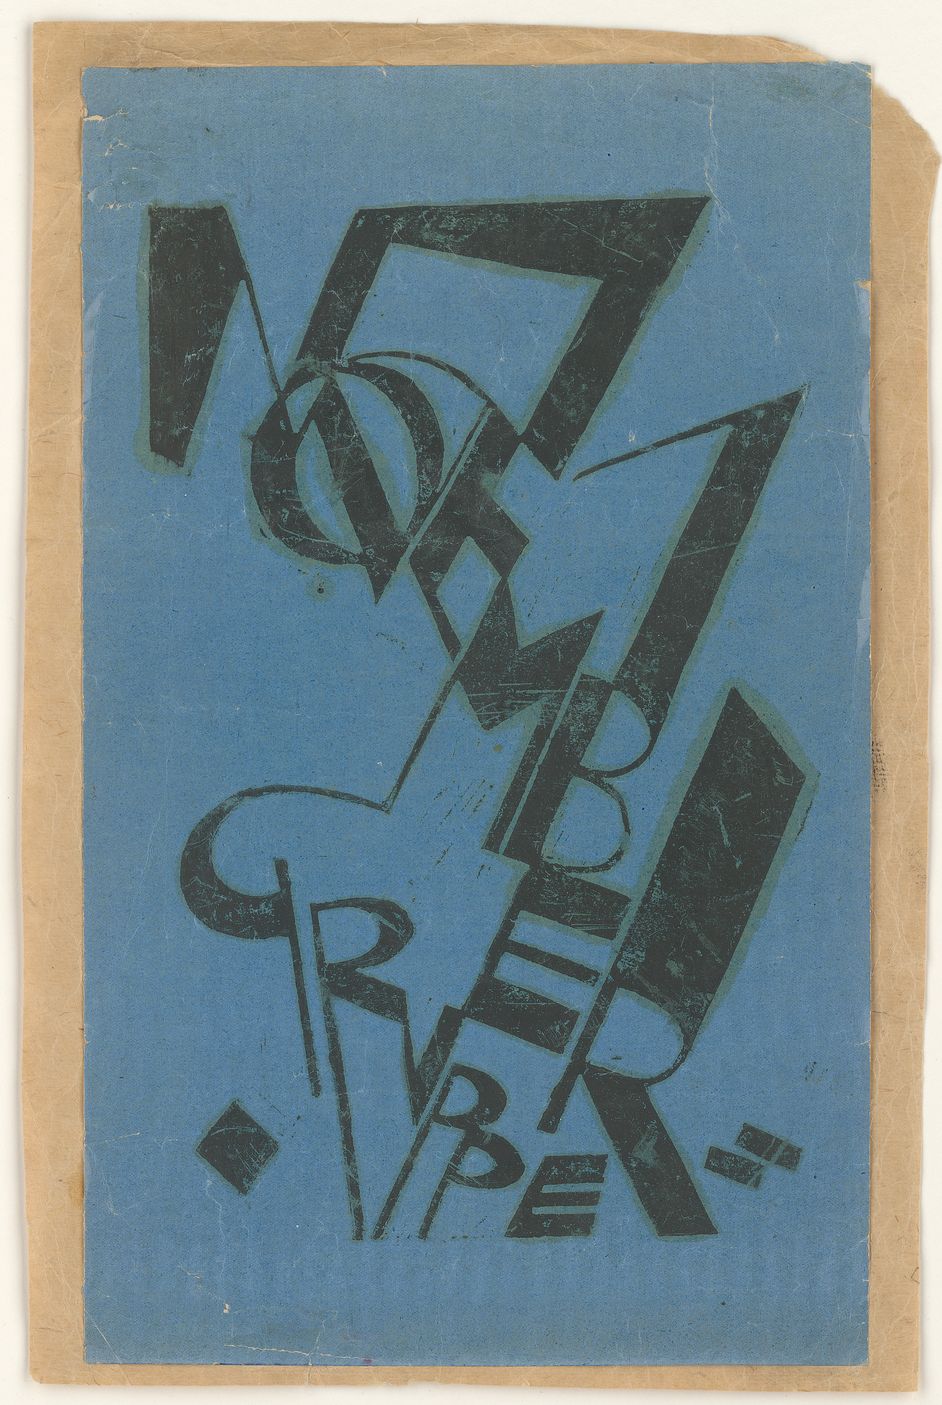 Typografischer Entwurf von Moritz Melzer, Druckgrafik und Druckfarbe auf blauem Hochglanzpapier, 35,5 x 21,5 cm